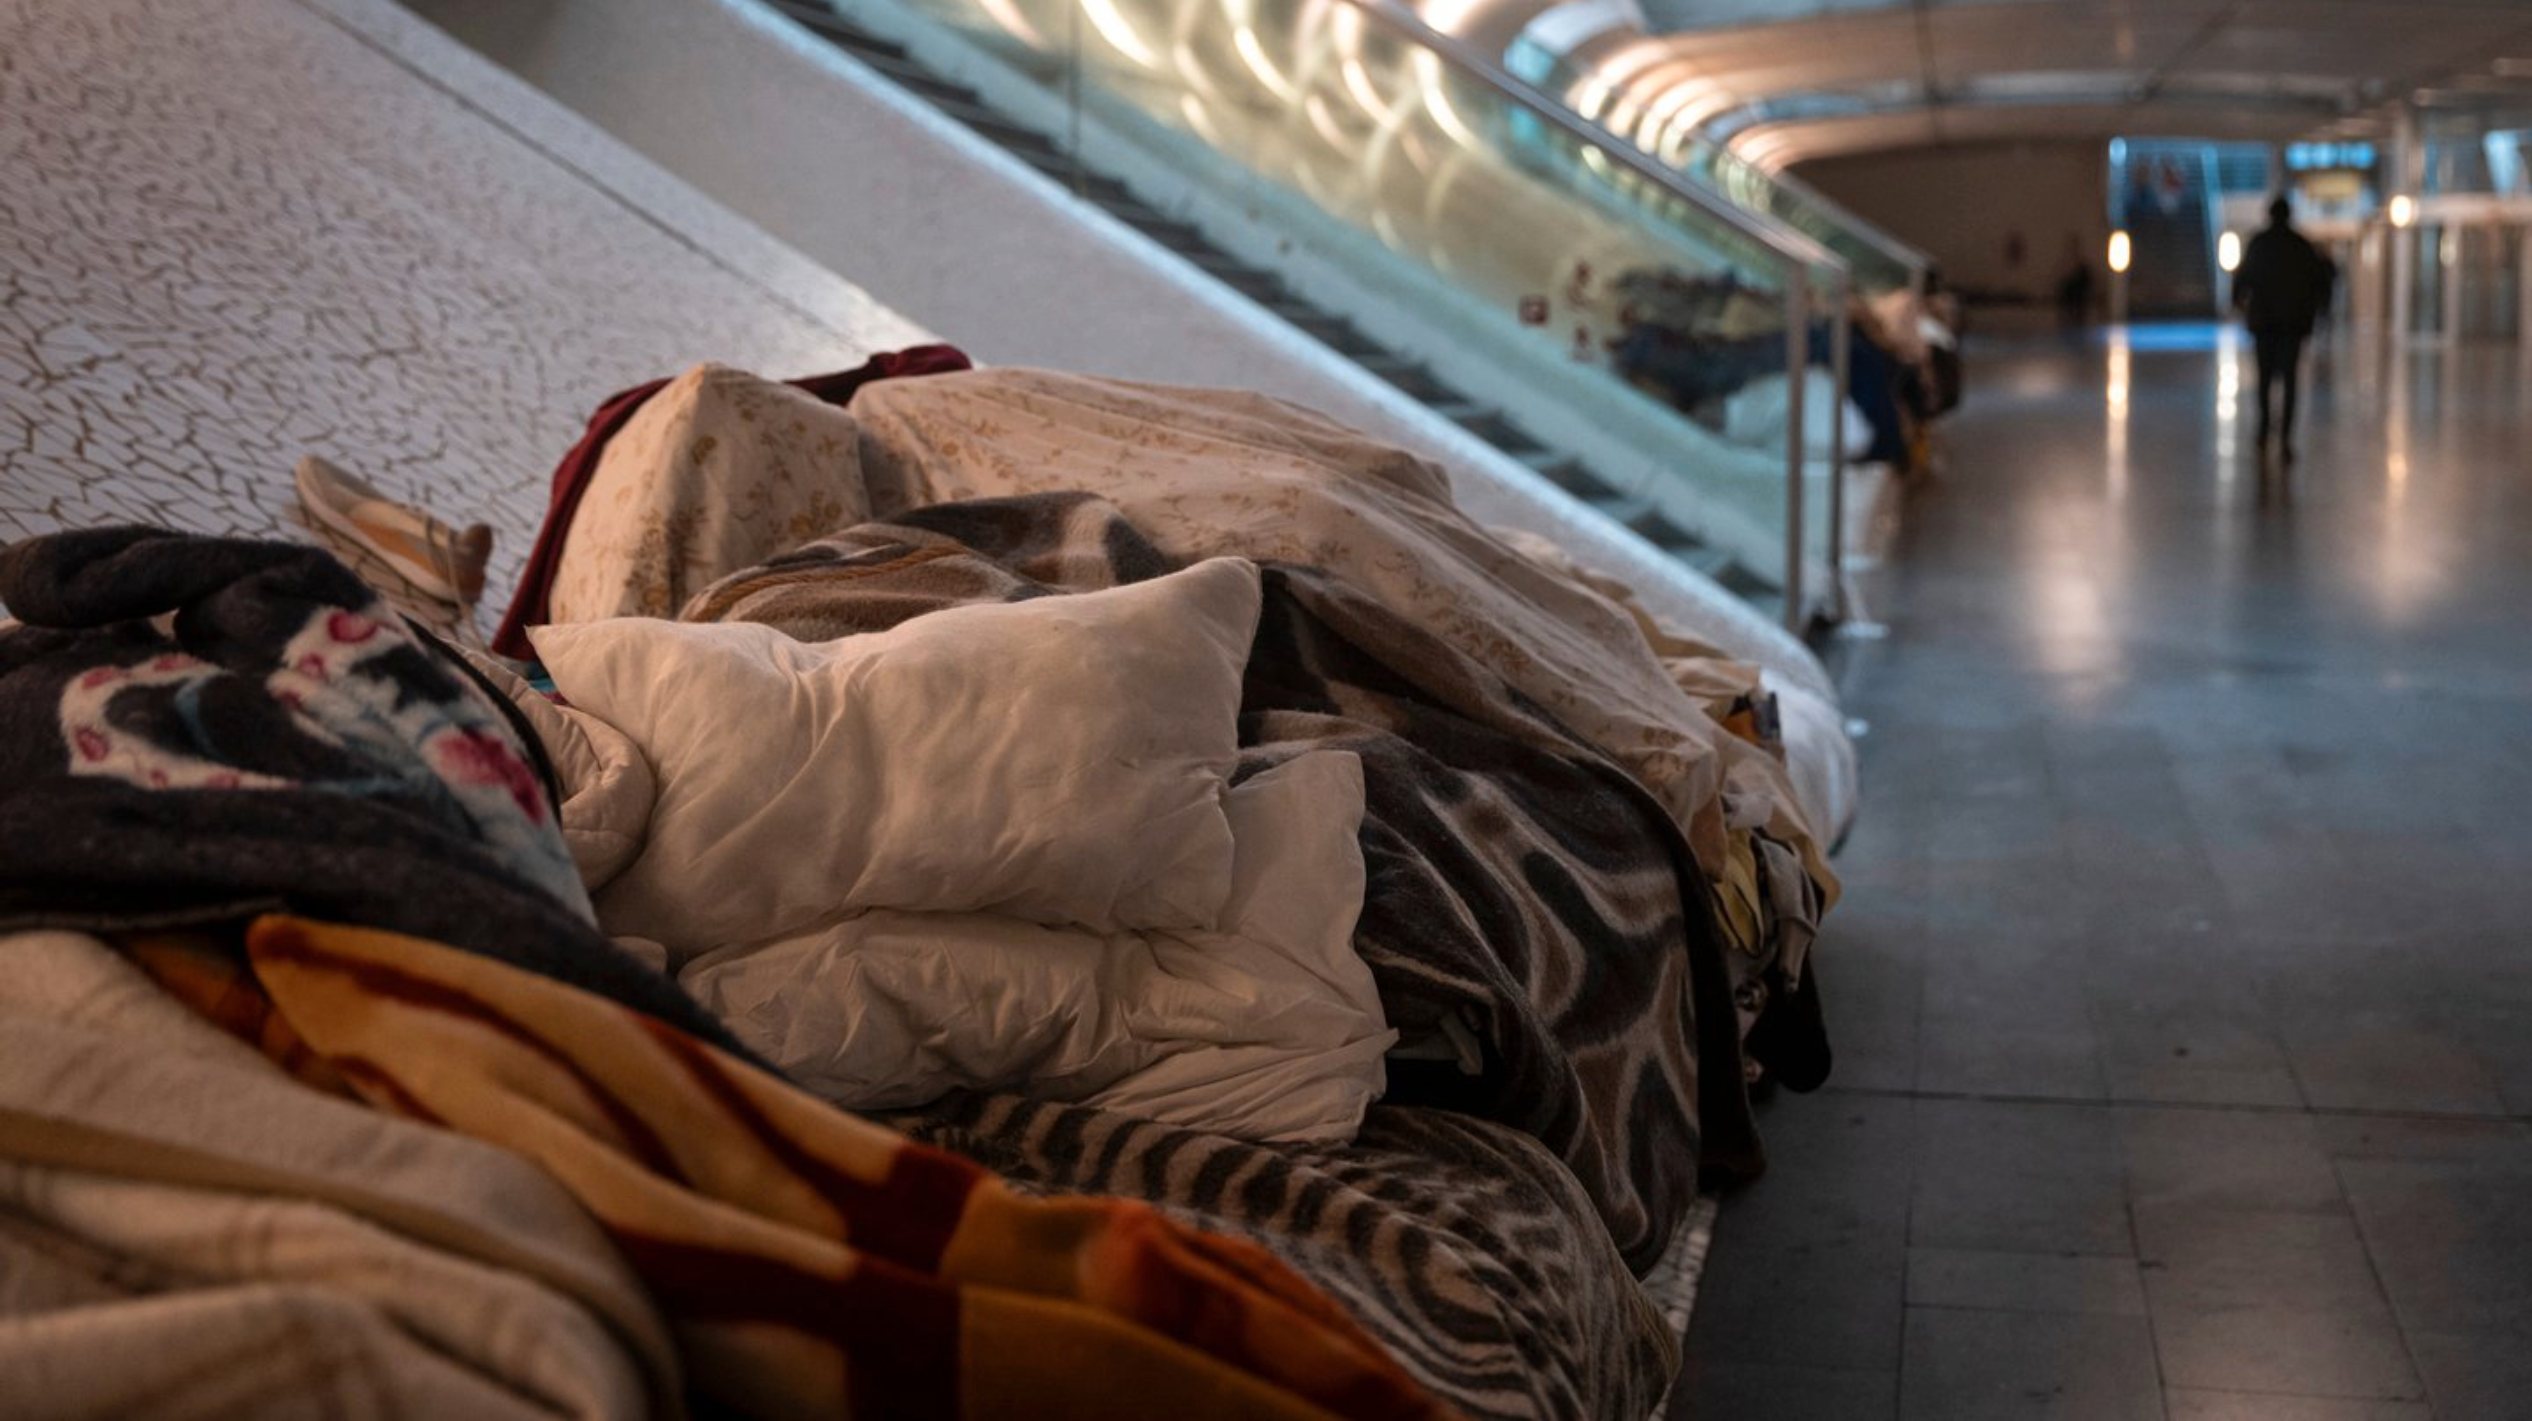 O autarca de Lisboa disse que o problema das pessoas em situação de sem-abrigo na cidade agravou-se após a pandemia